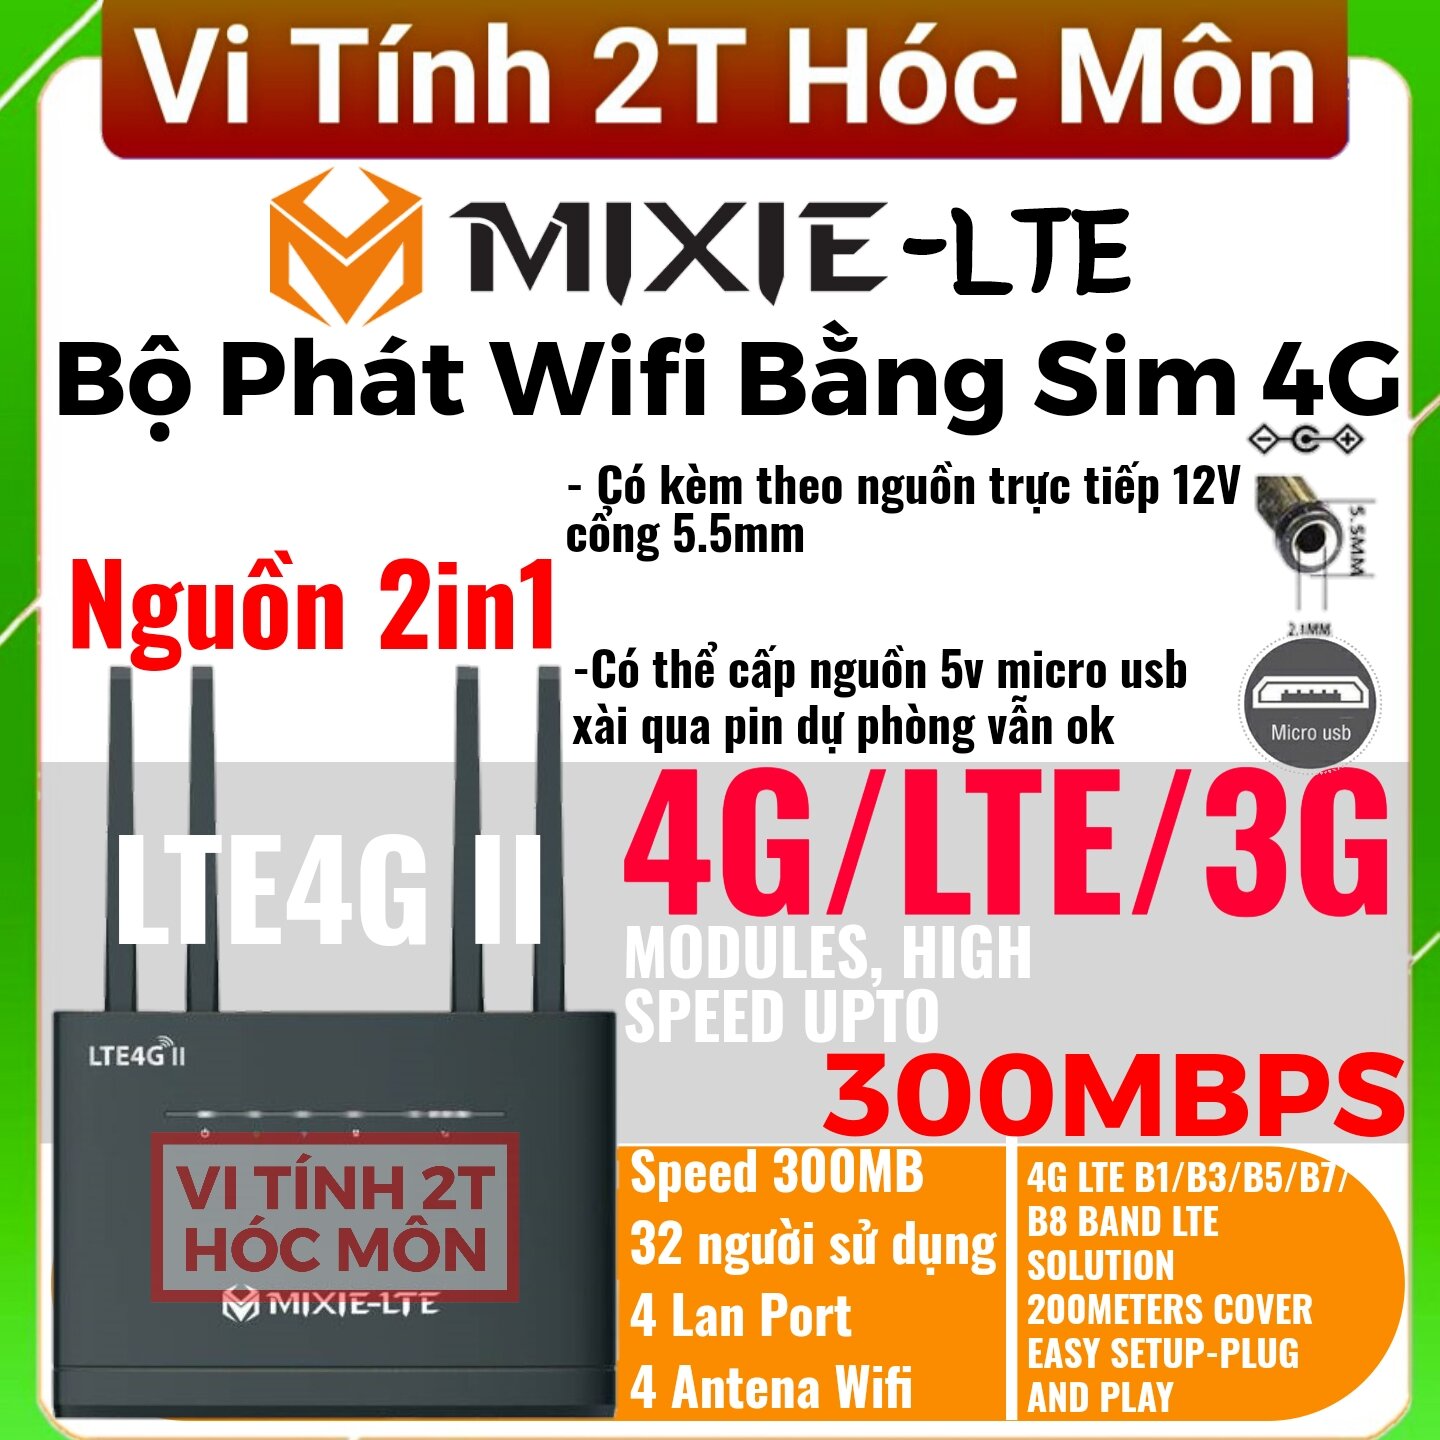 BỘ PHÁT 4G WIFI MIXIE LTE 4G - 4 ANTEN - 4 CỔNG LAN HỖ TRỢ LÊN ĐẾN 32 THIẾT BỊ